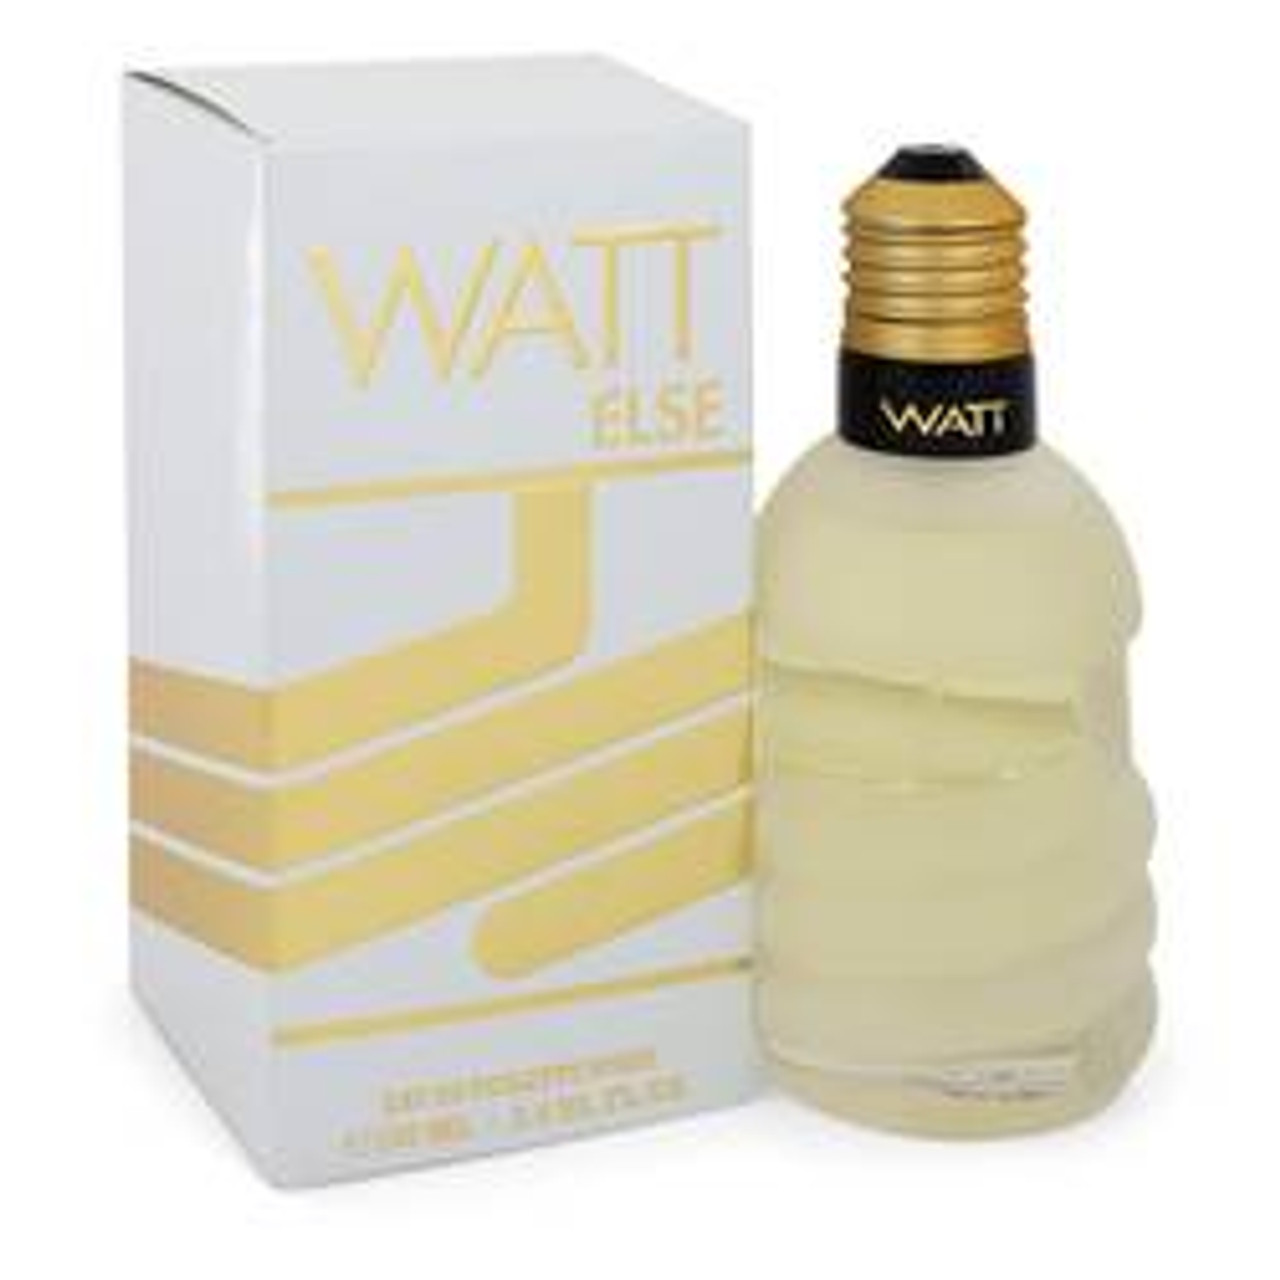 Watt Else Perfume By Cofinluxe Eau De Toilette Spray 3.4 oz for Women - [From 31.00 - Choose pk Qty ] - *Ships from Miami